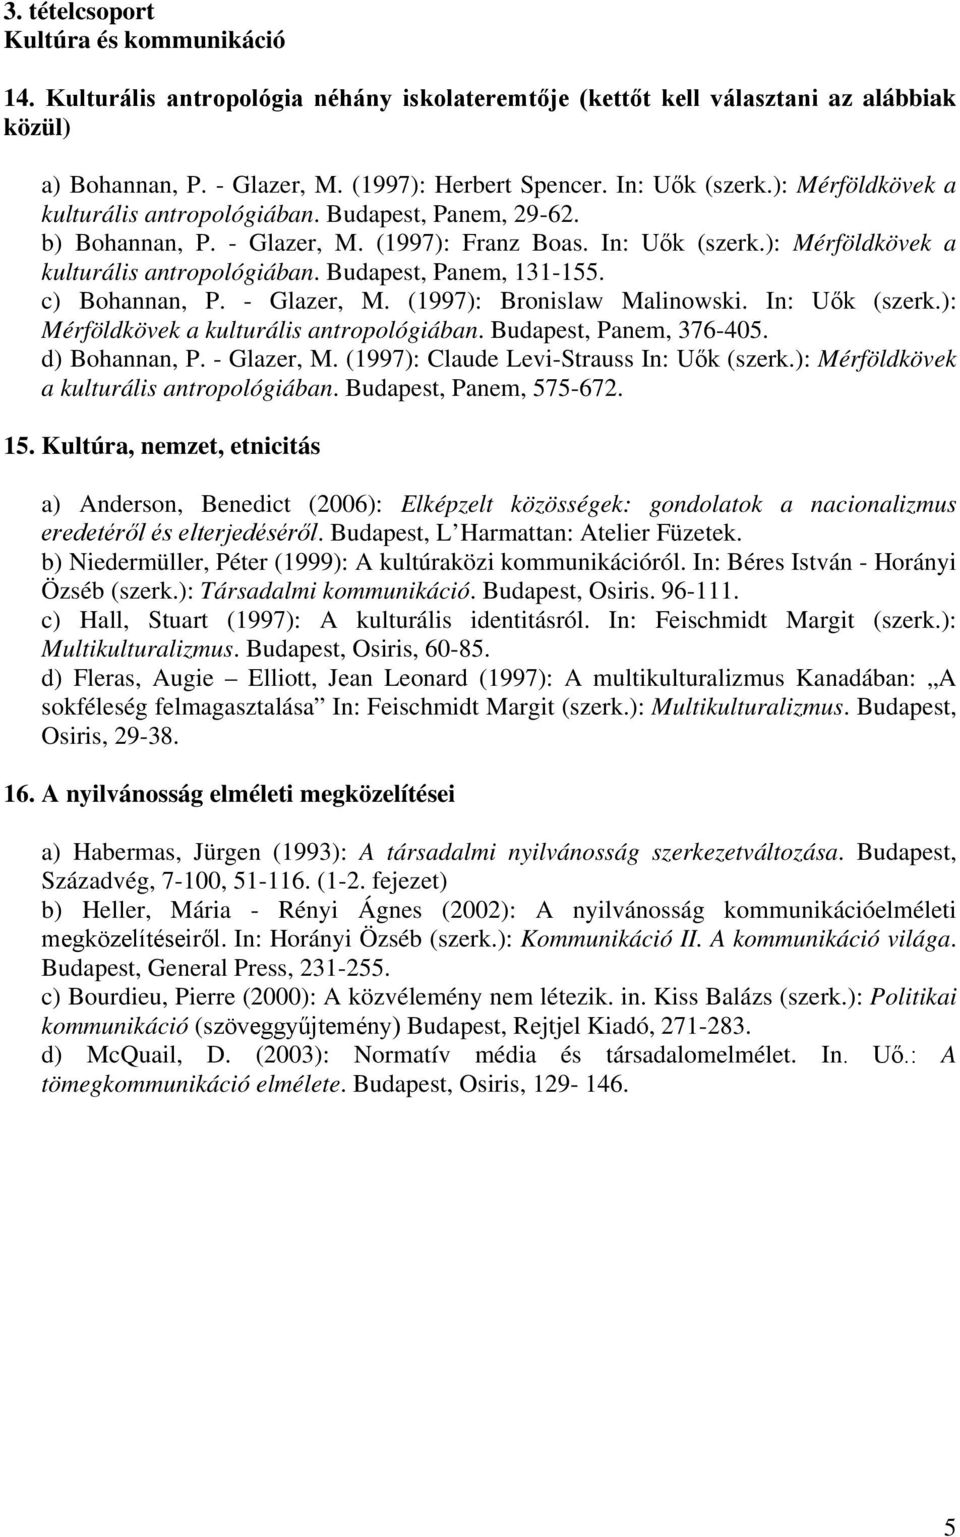 c) Bohannan, P. - Glazer, M. (1997): Bronislaw Malinowski. In: Uők (szerk.): Mérföldkövek a kulturális antropológiában. Budapest, Panem, 376-405. d) Bohannan, P. - Glazer, M. (1997): Claude Levi-Strauss In: Uők (szerk.